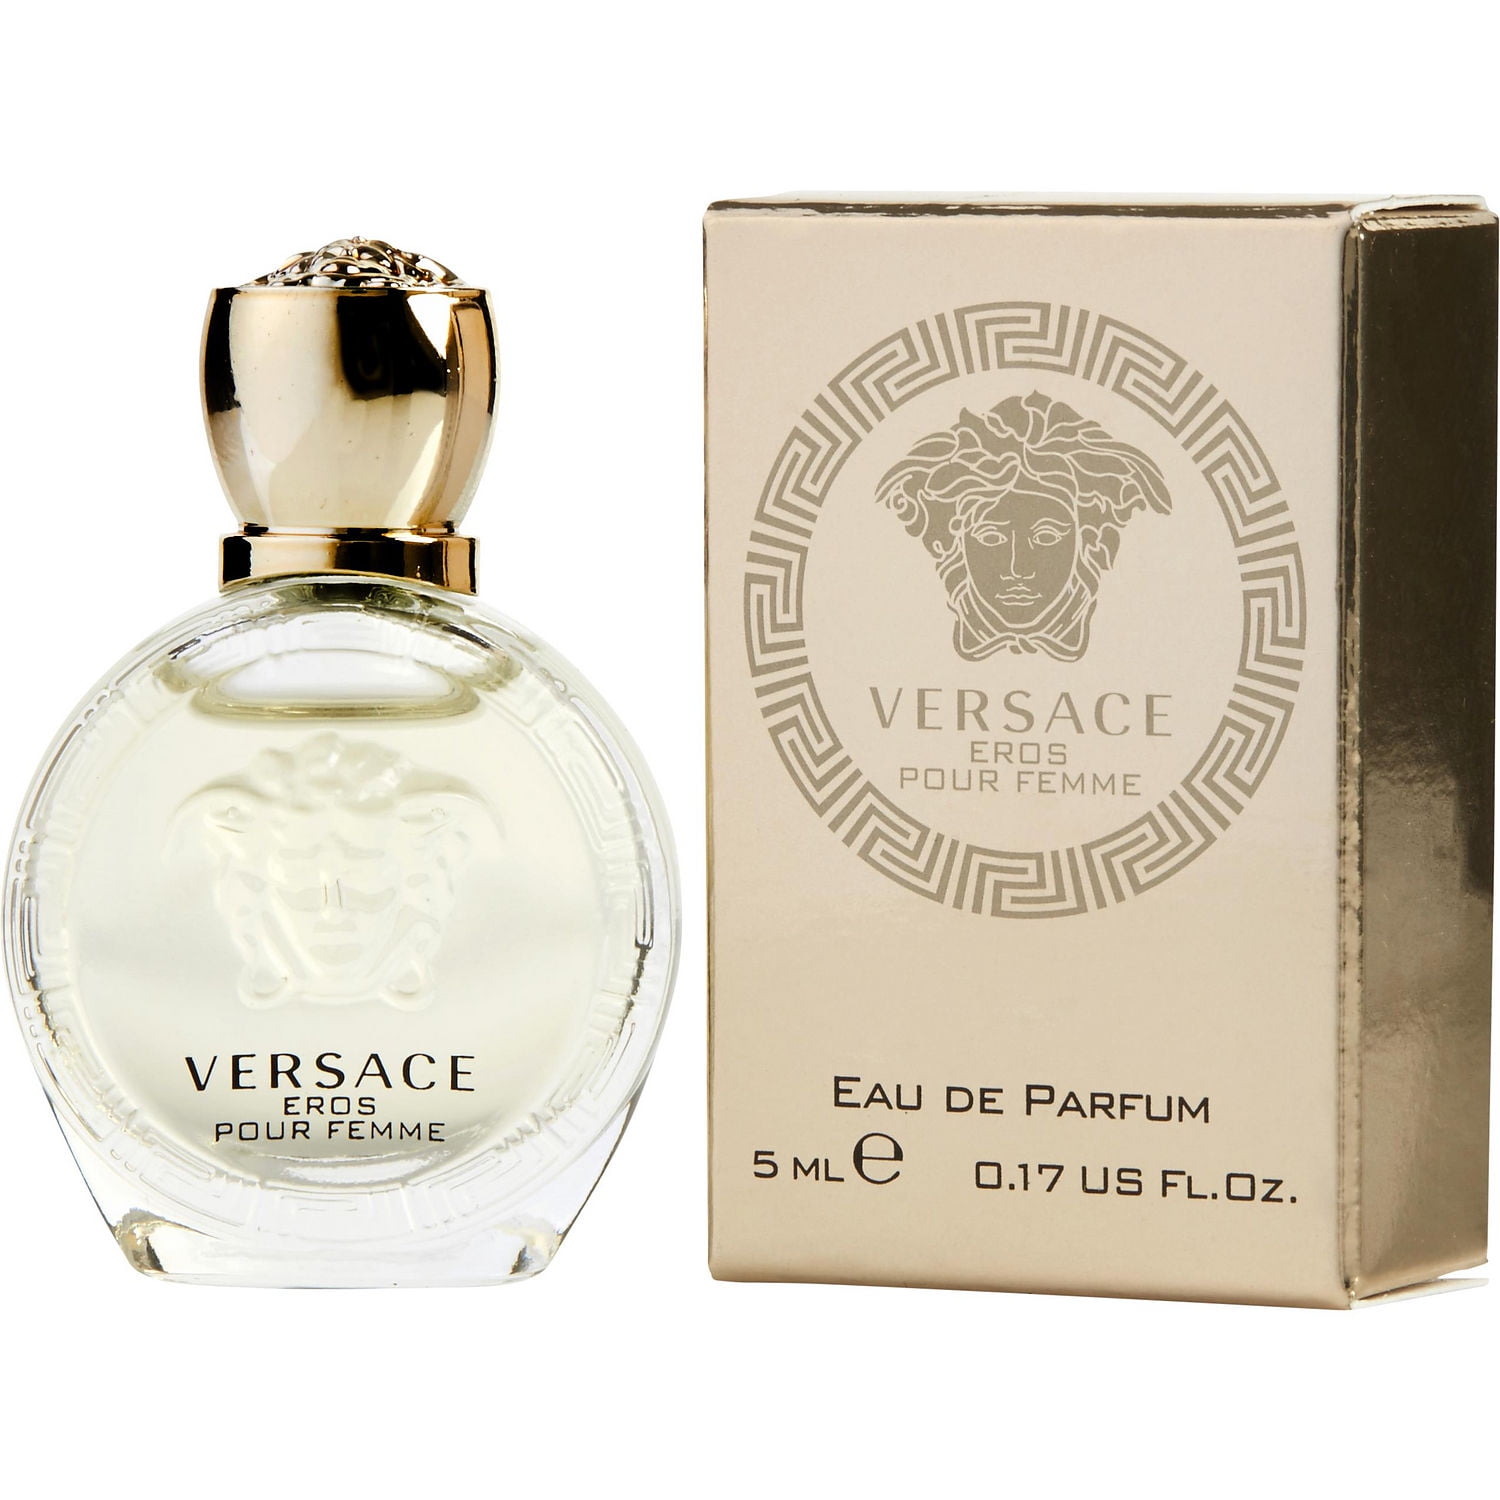 Versace Eros Pour Femme 0.17 Oz Eau de Parfum Splash for Women